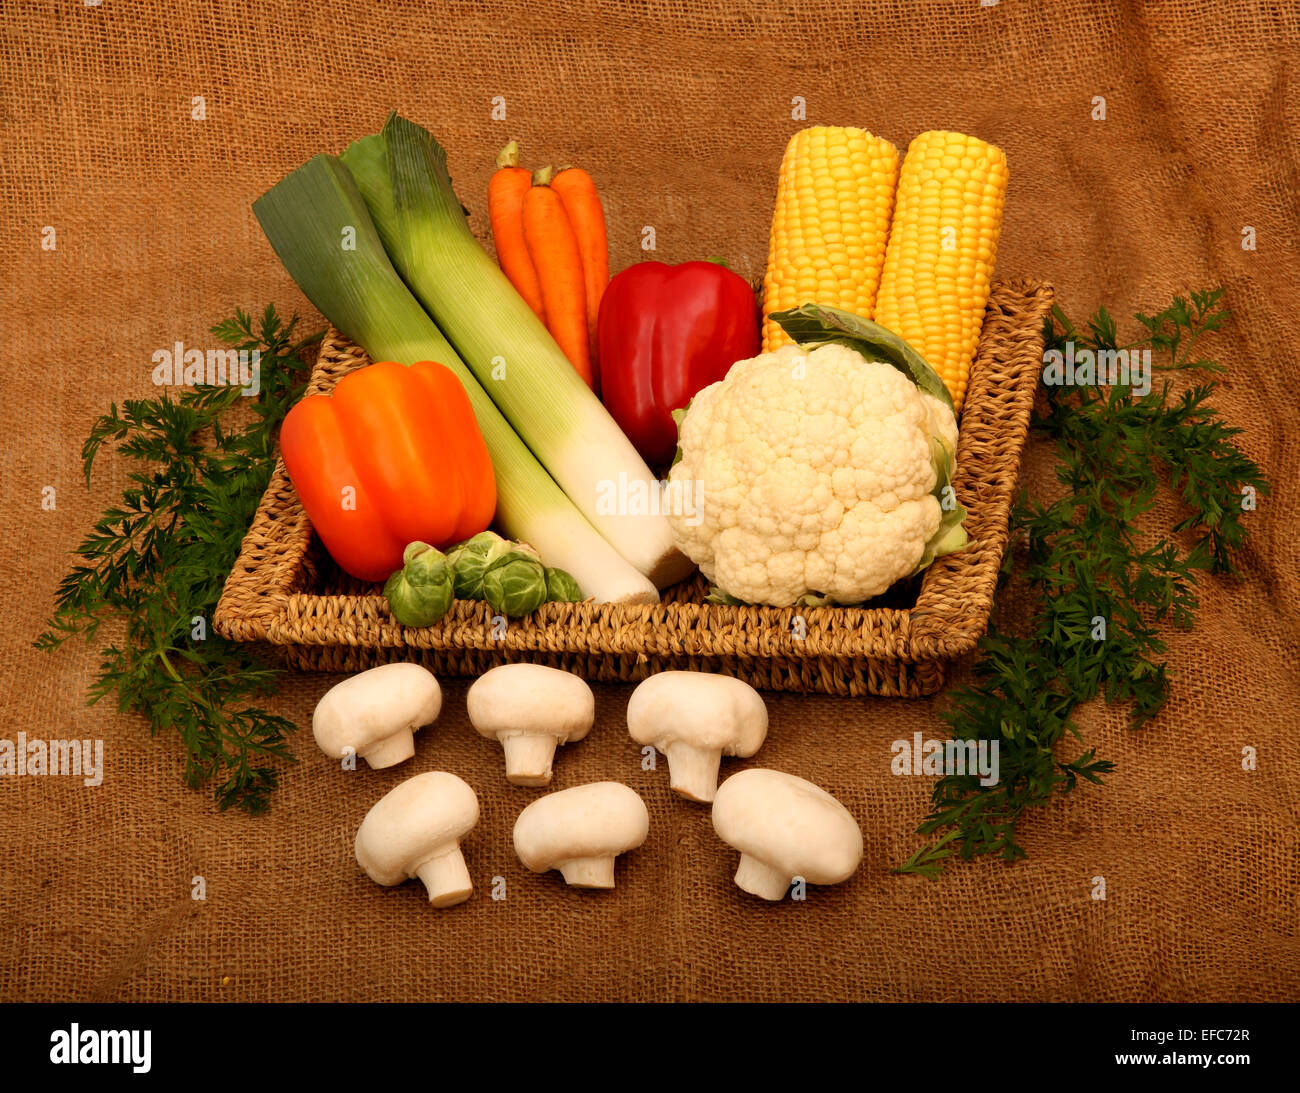 Un vassoio di vimini contenenti una varietà di verdure con foglie di carota accanto al vassoio, tutti su di un panno di tela Foto Stock